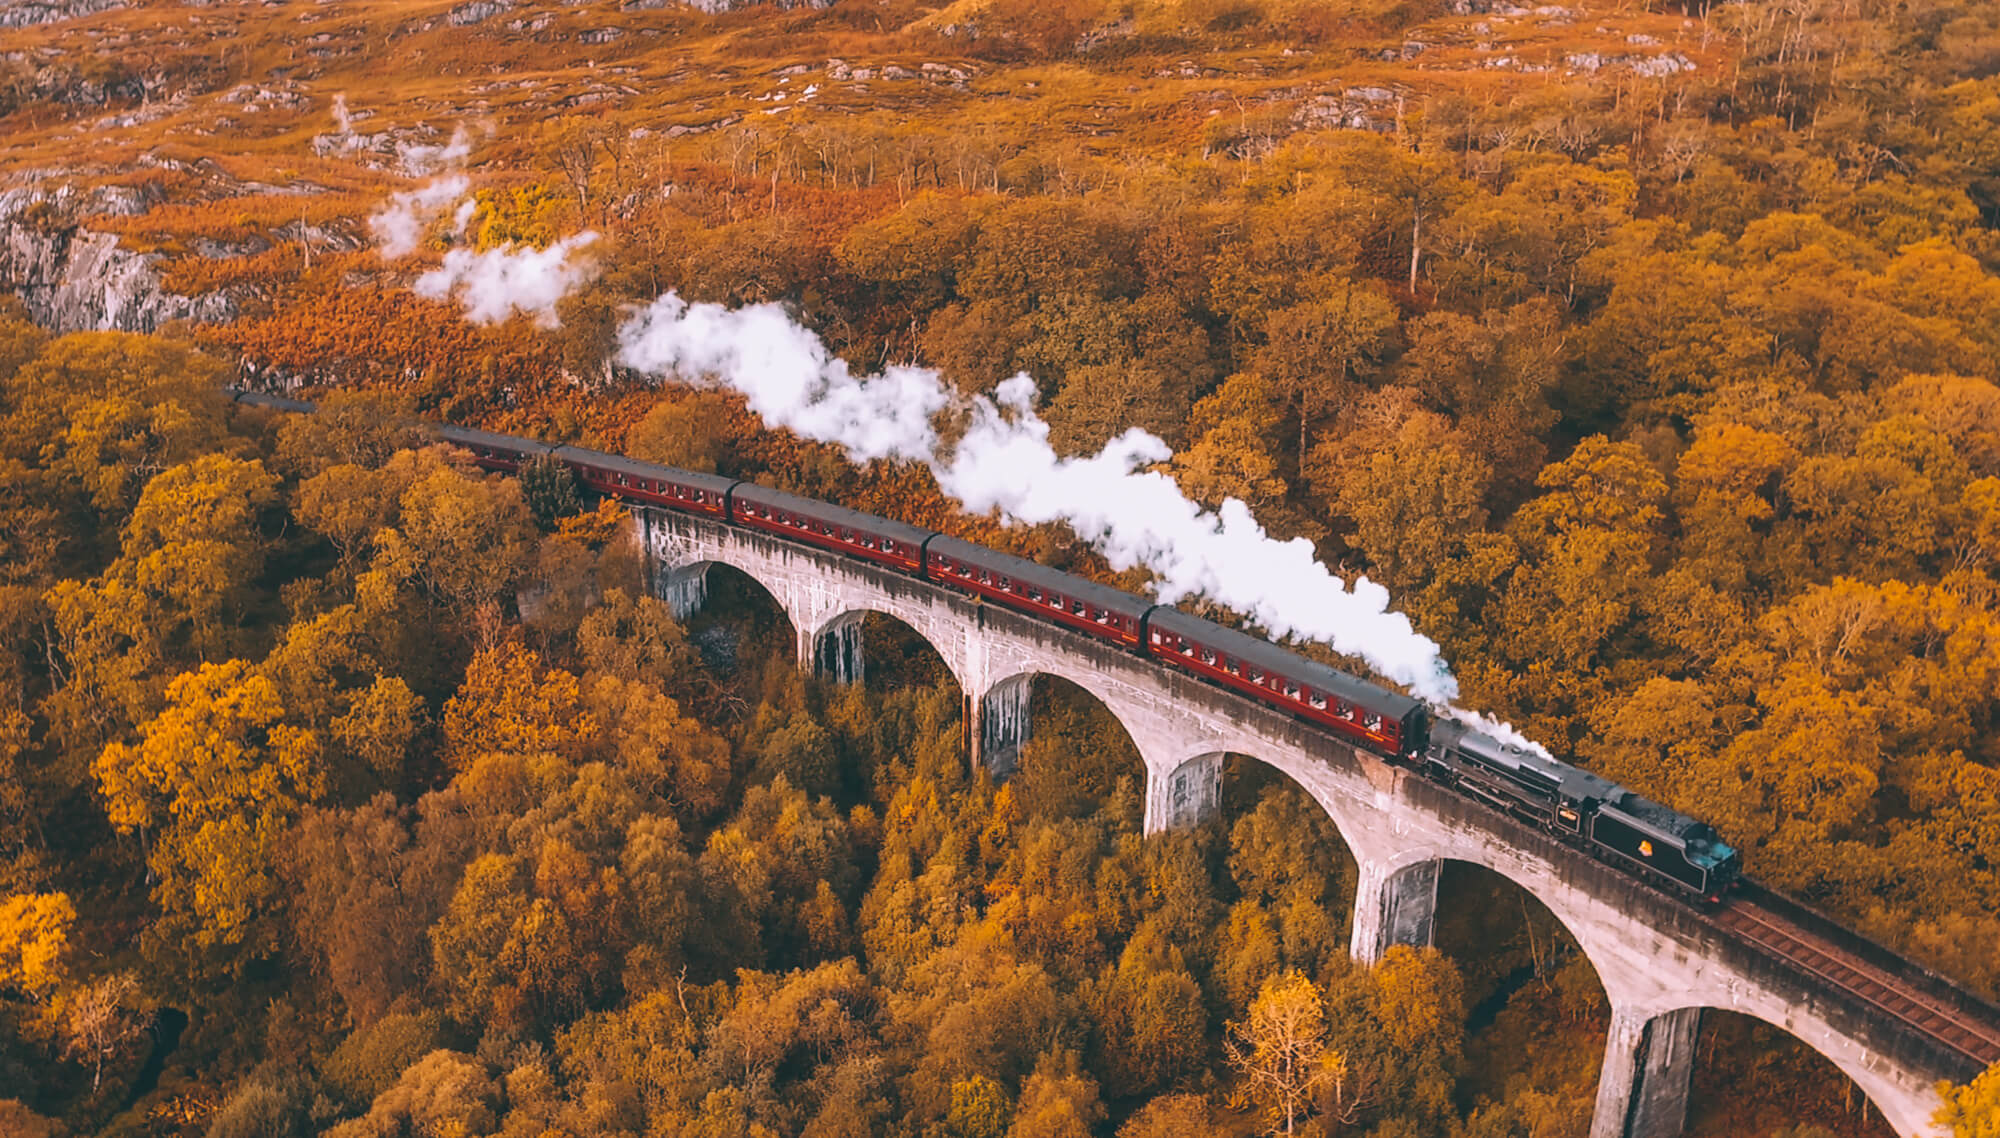 jacobite steam train in scotland